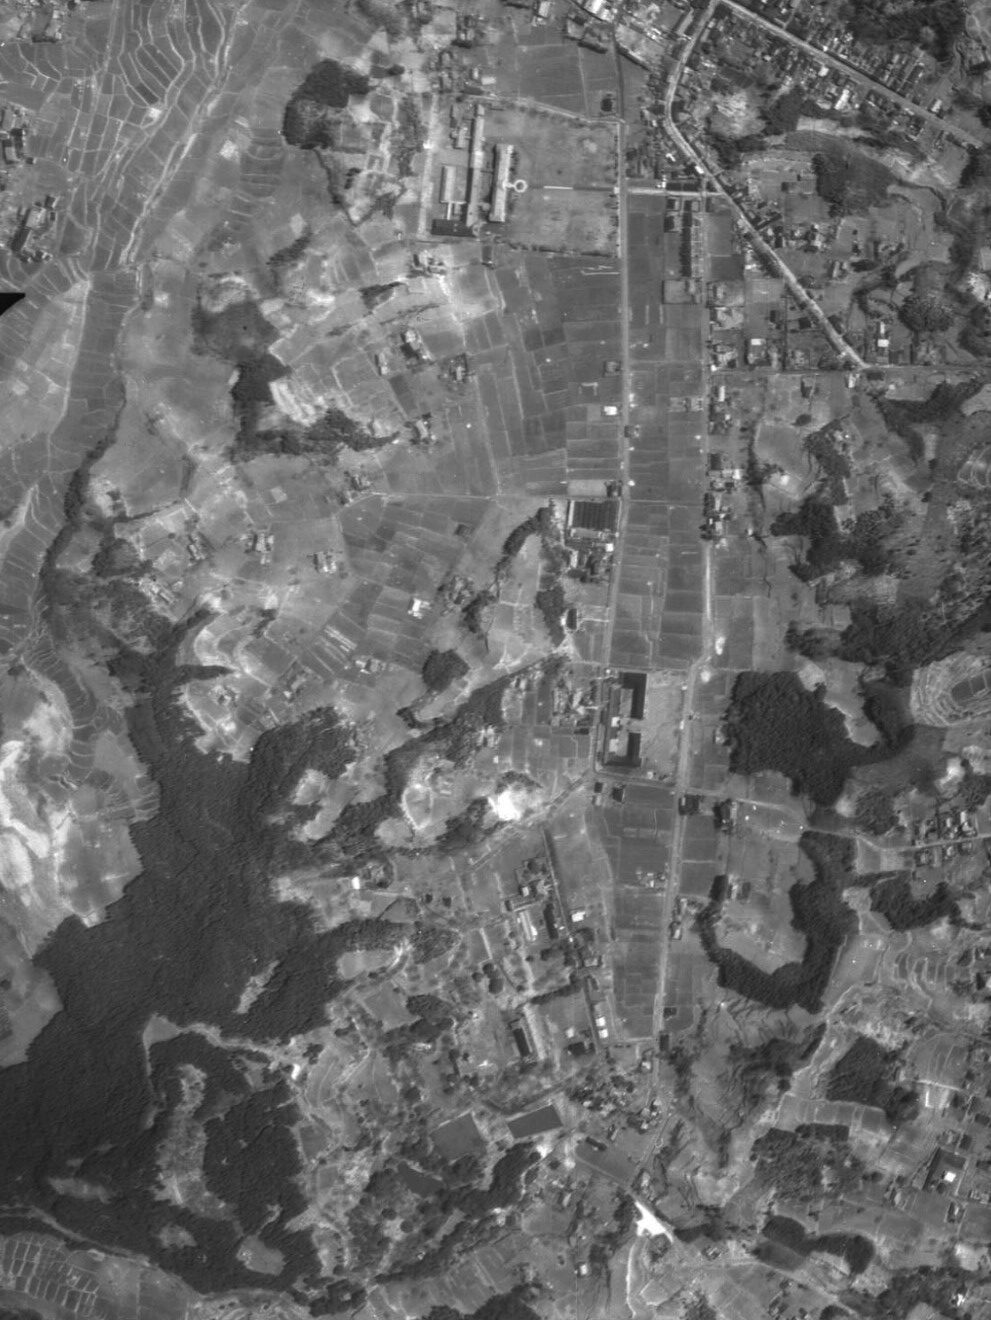 二本松城址と旧城下町、昭和23年撮影空中写真（国土地理院Webサイトより、USA-R1185-56〔部分〕）の画像。 